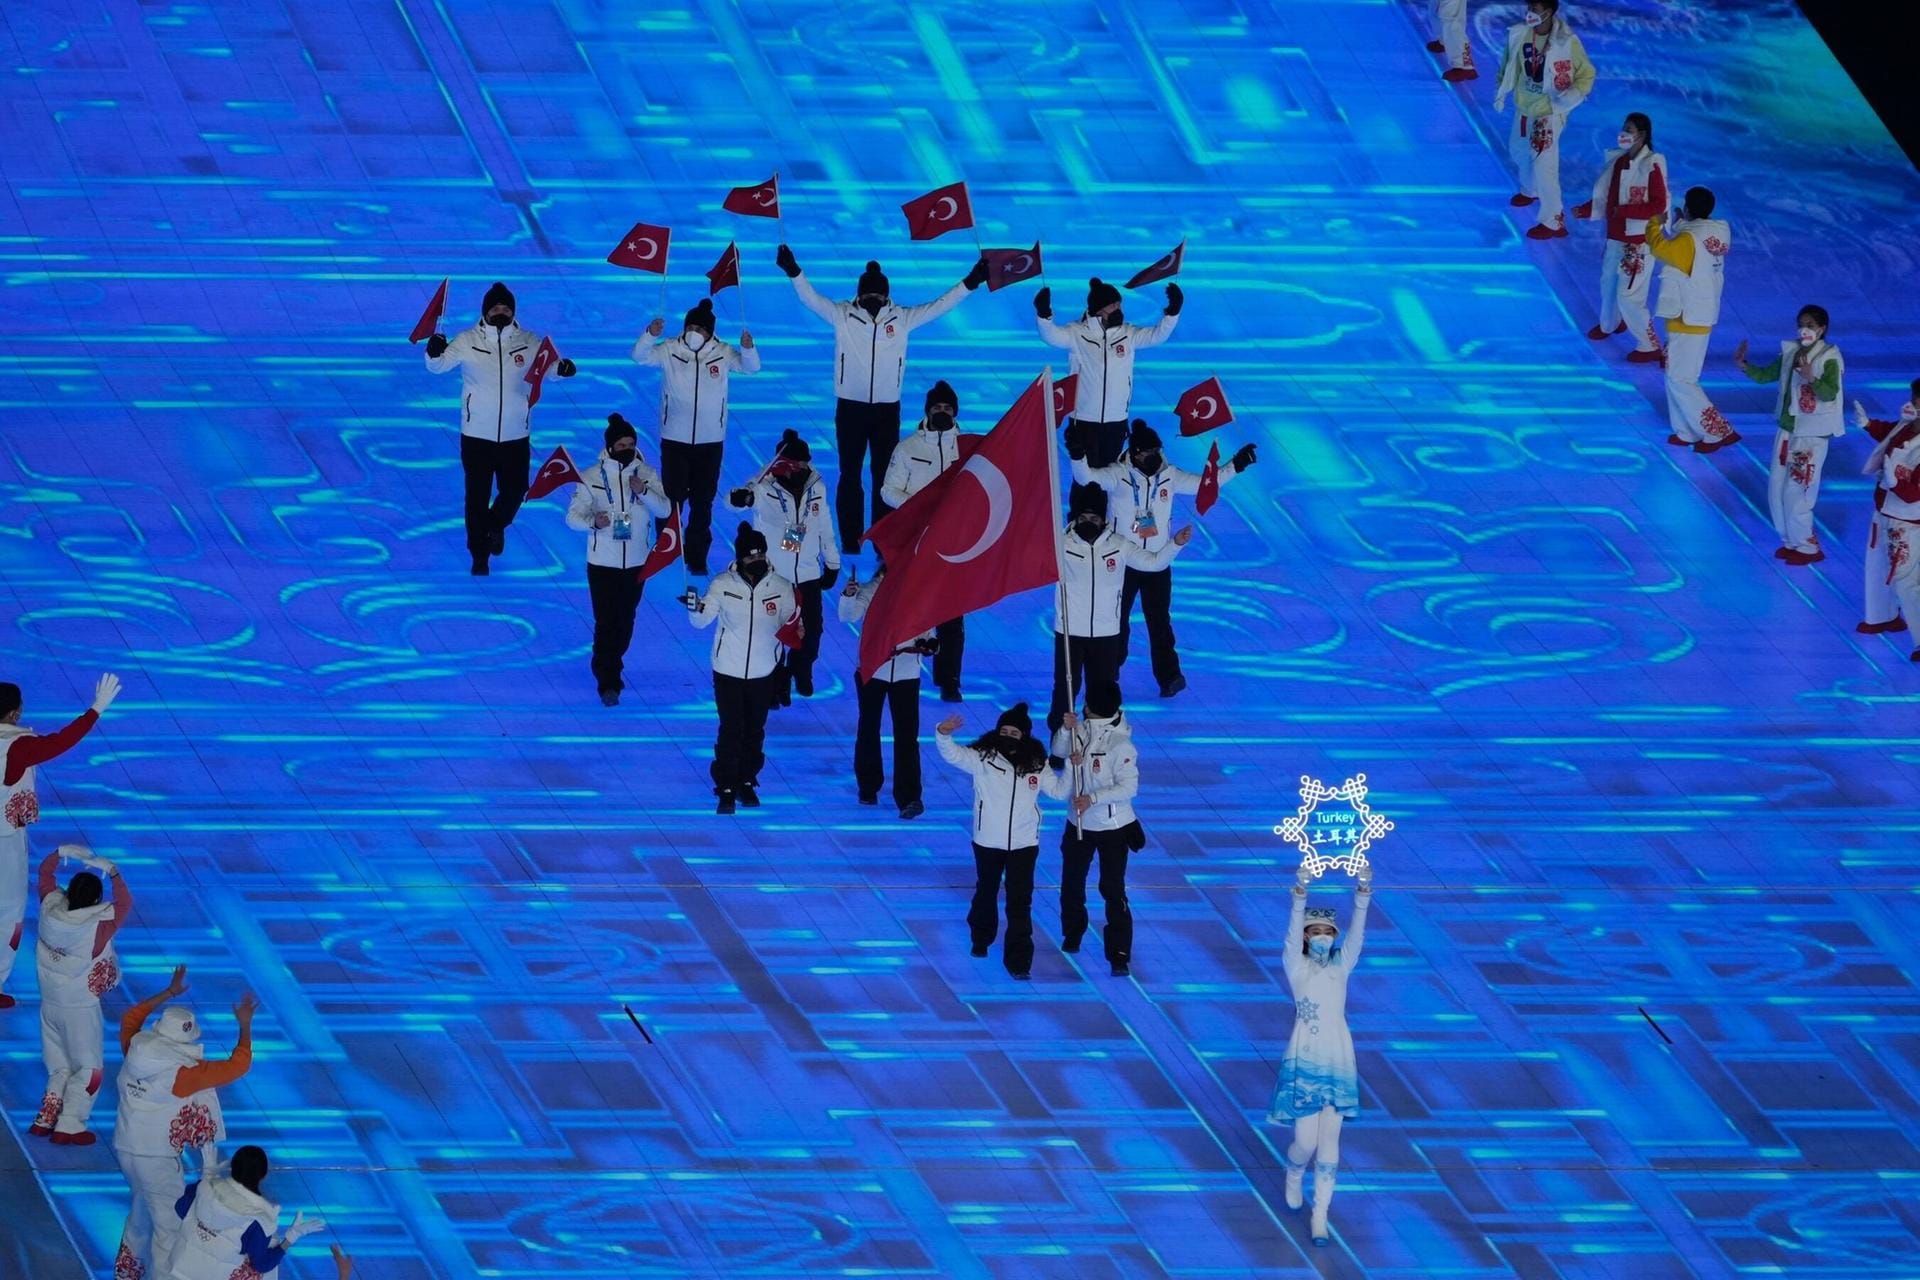 Der Einlauf der Türkei: Diese Nation ist relativ am Anfang dran und darf sich das Stadion von innen anschauen, während das deutsche Team erst als 85. Nation von 91 einlaufen wird.